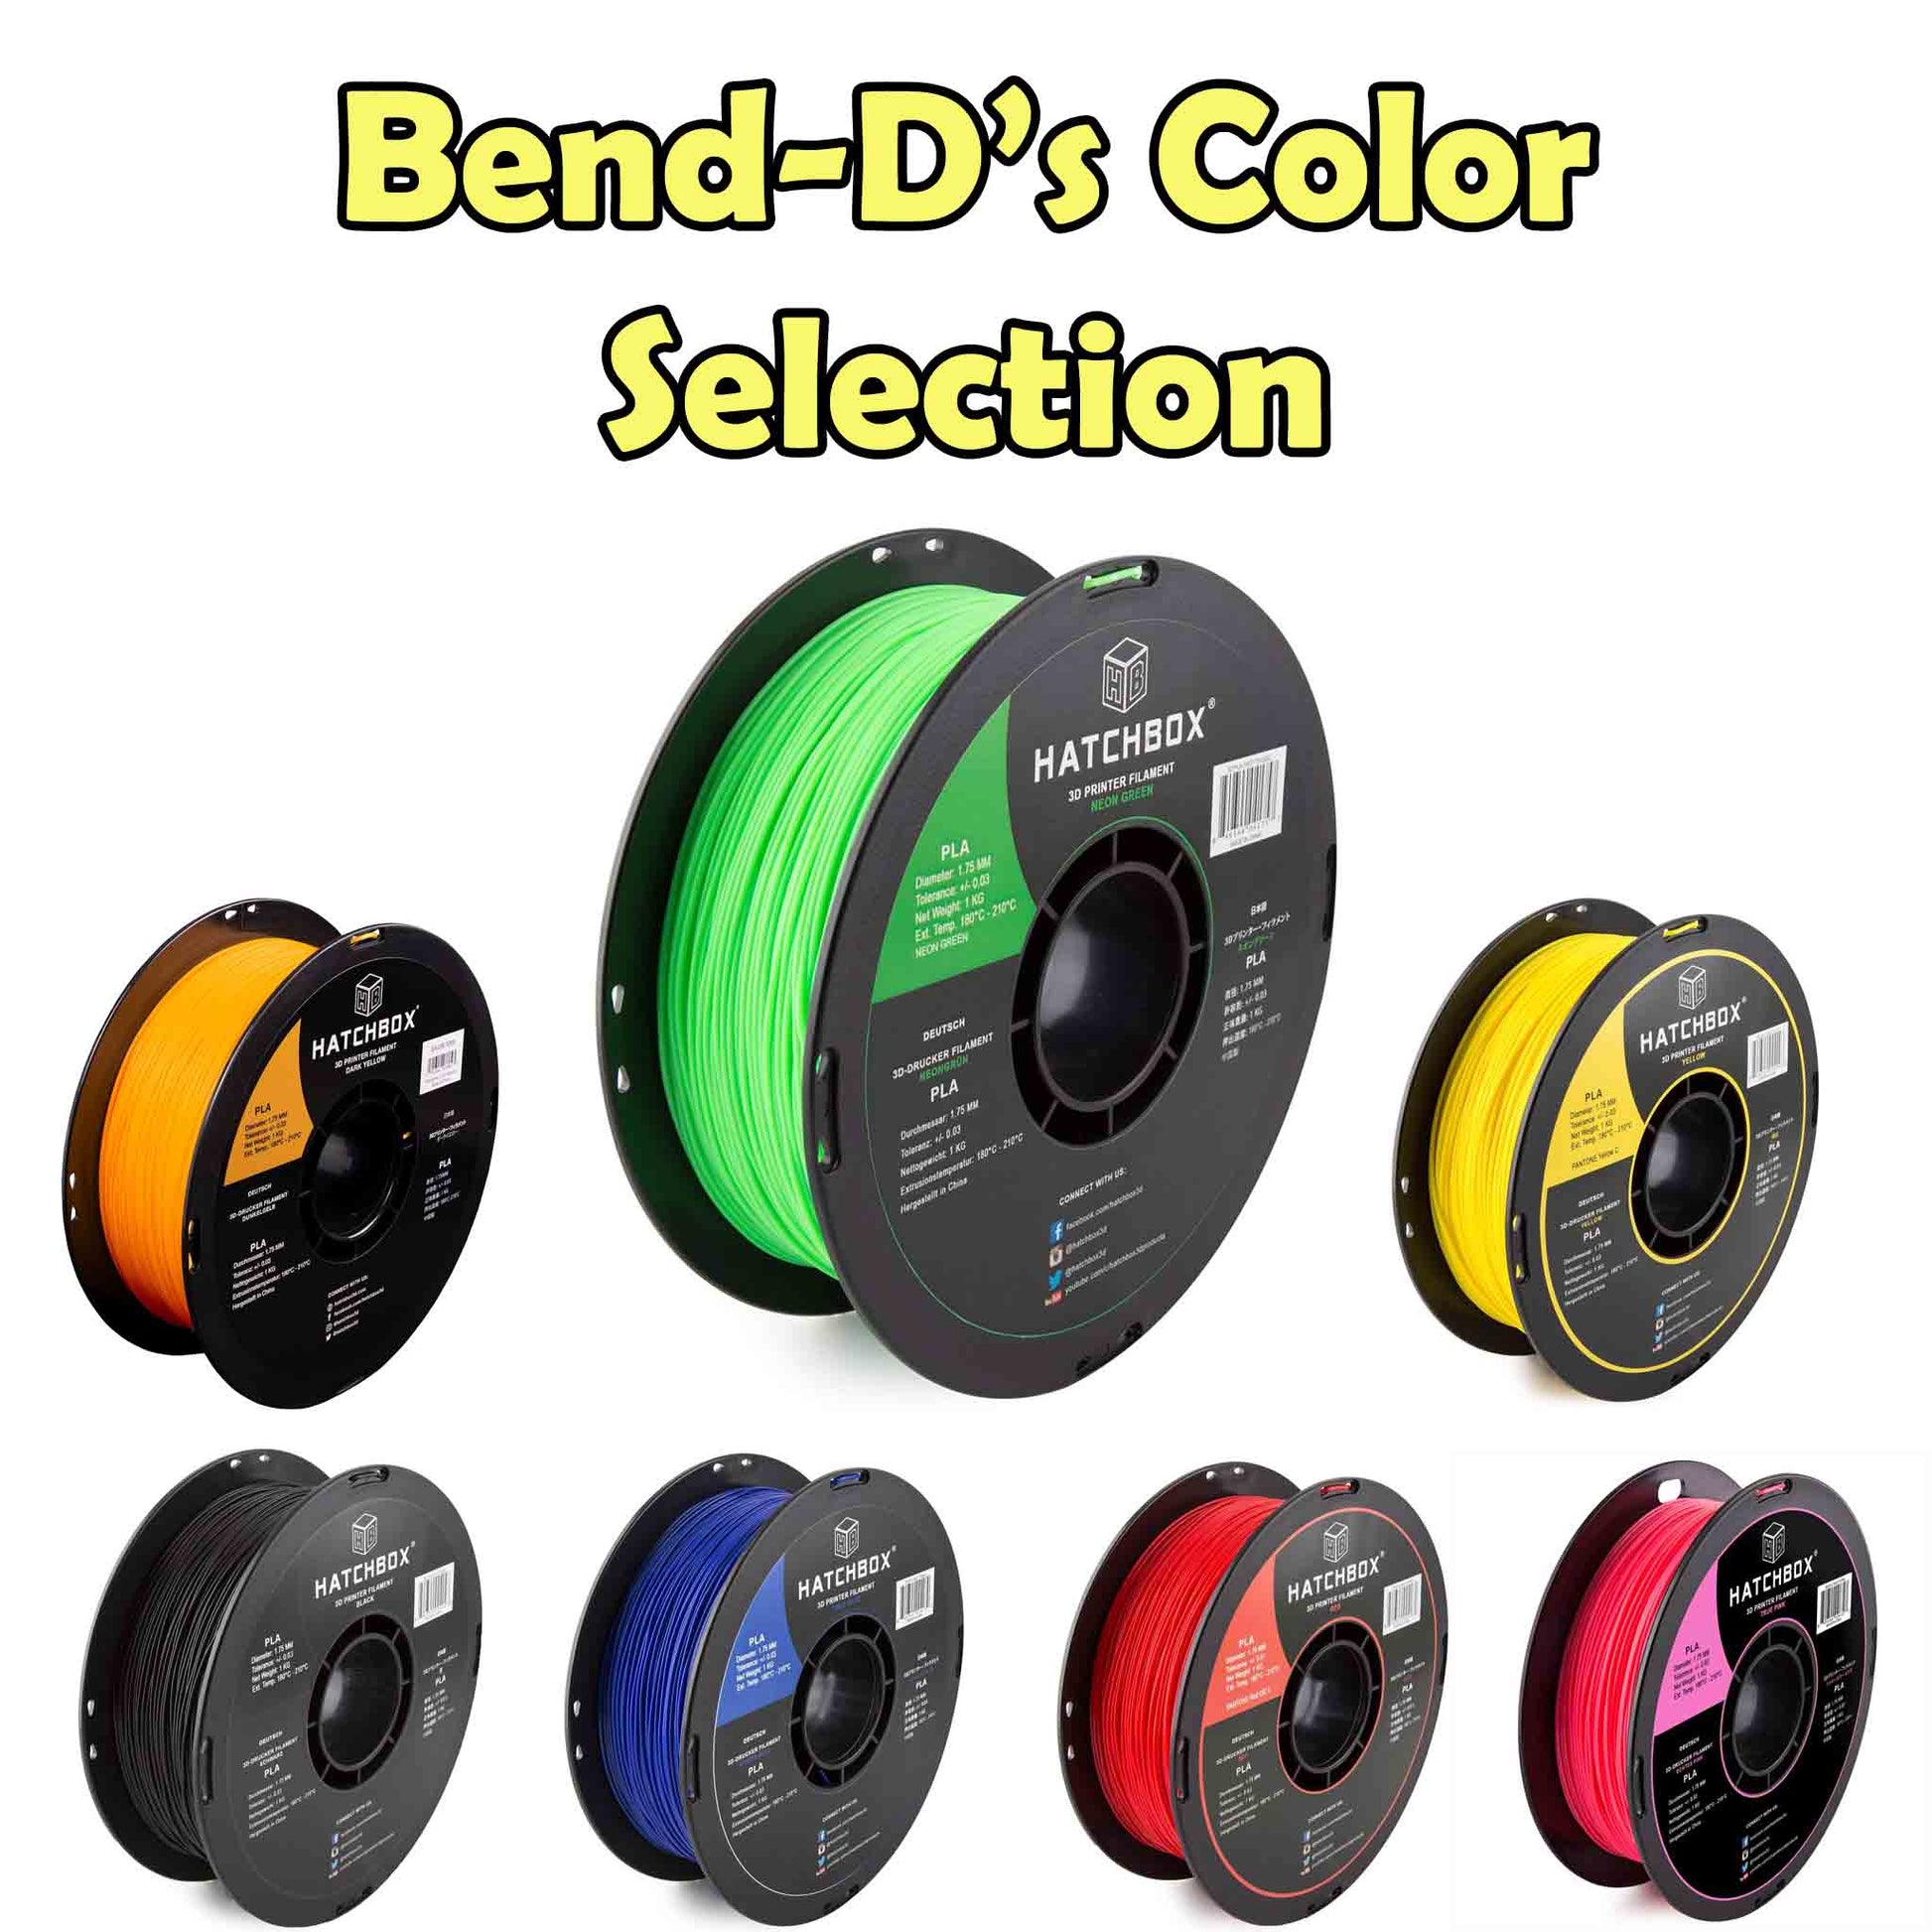 Hatchbox PLA Filament Colors for our Bend-D's Kits